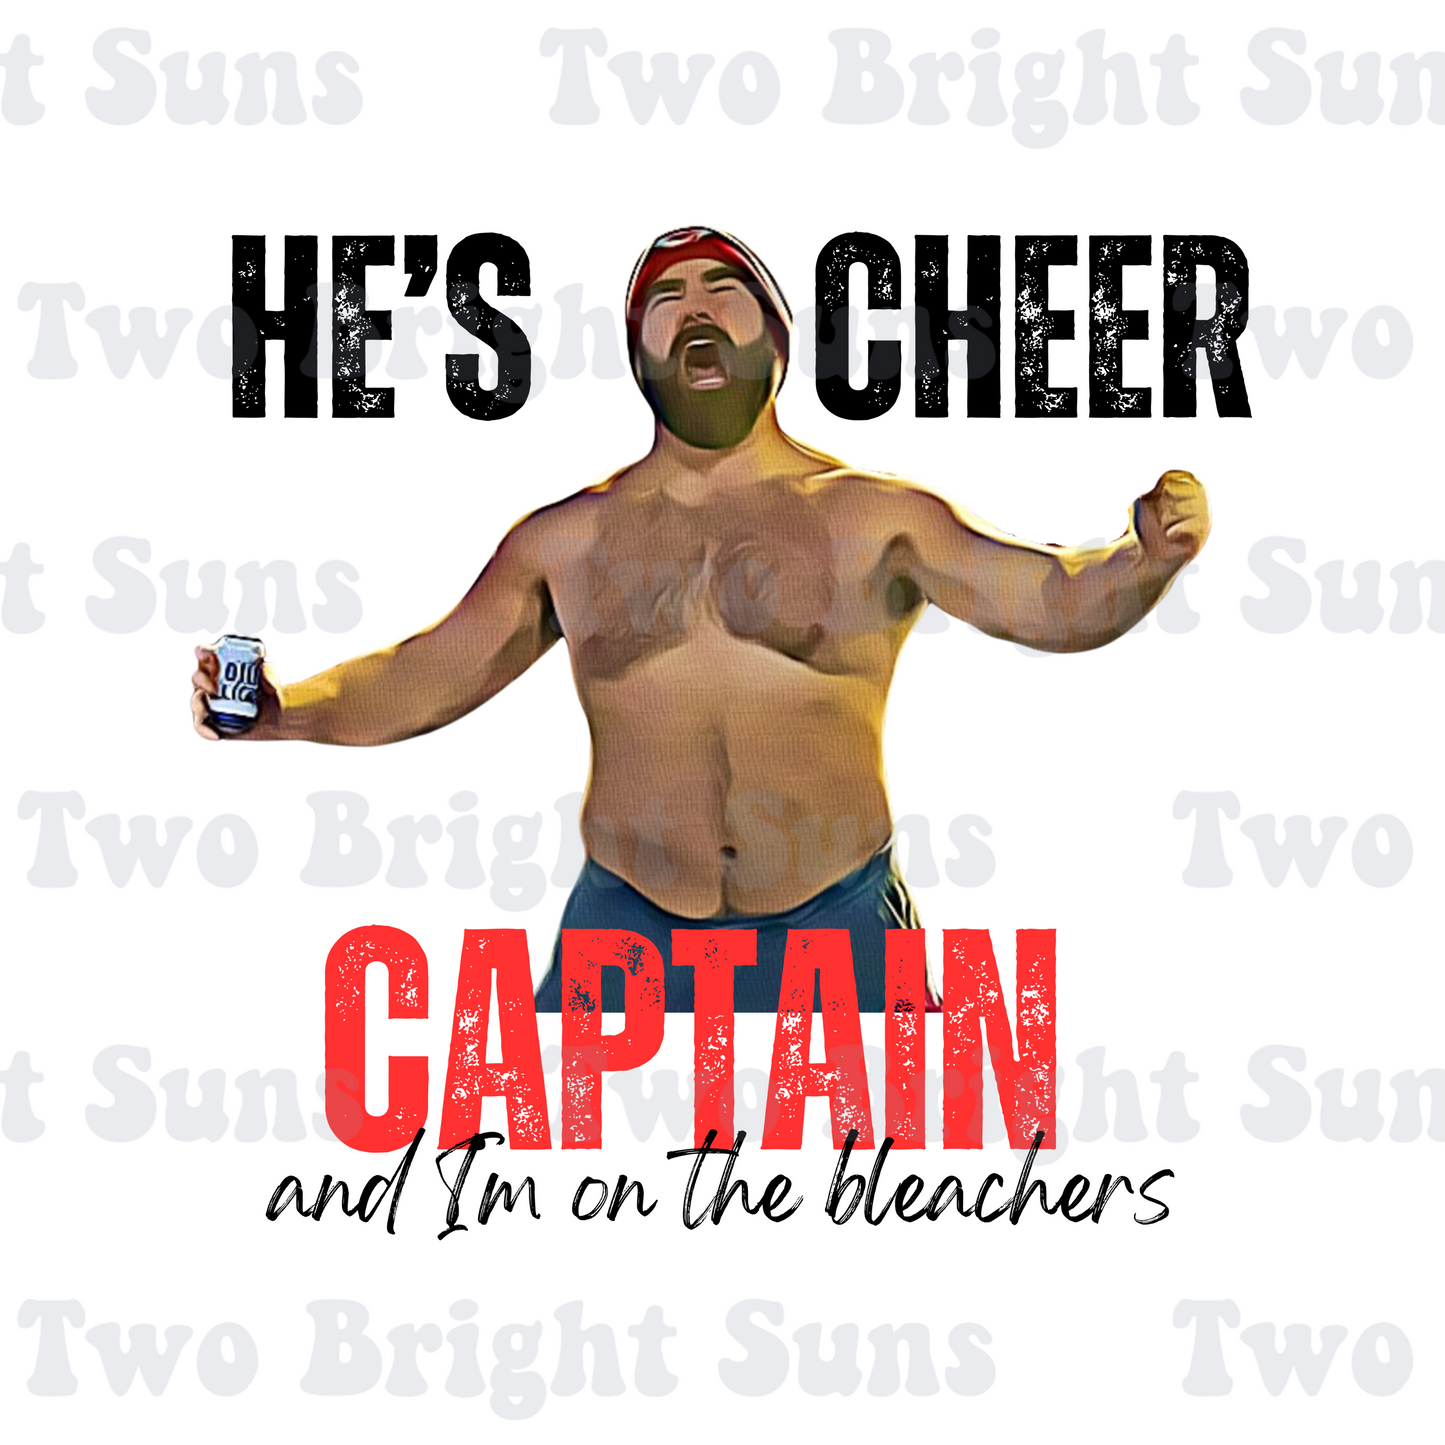 He's Cheer Captain